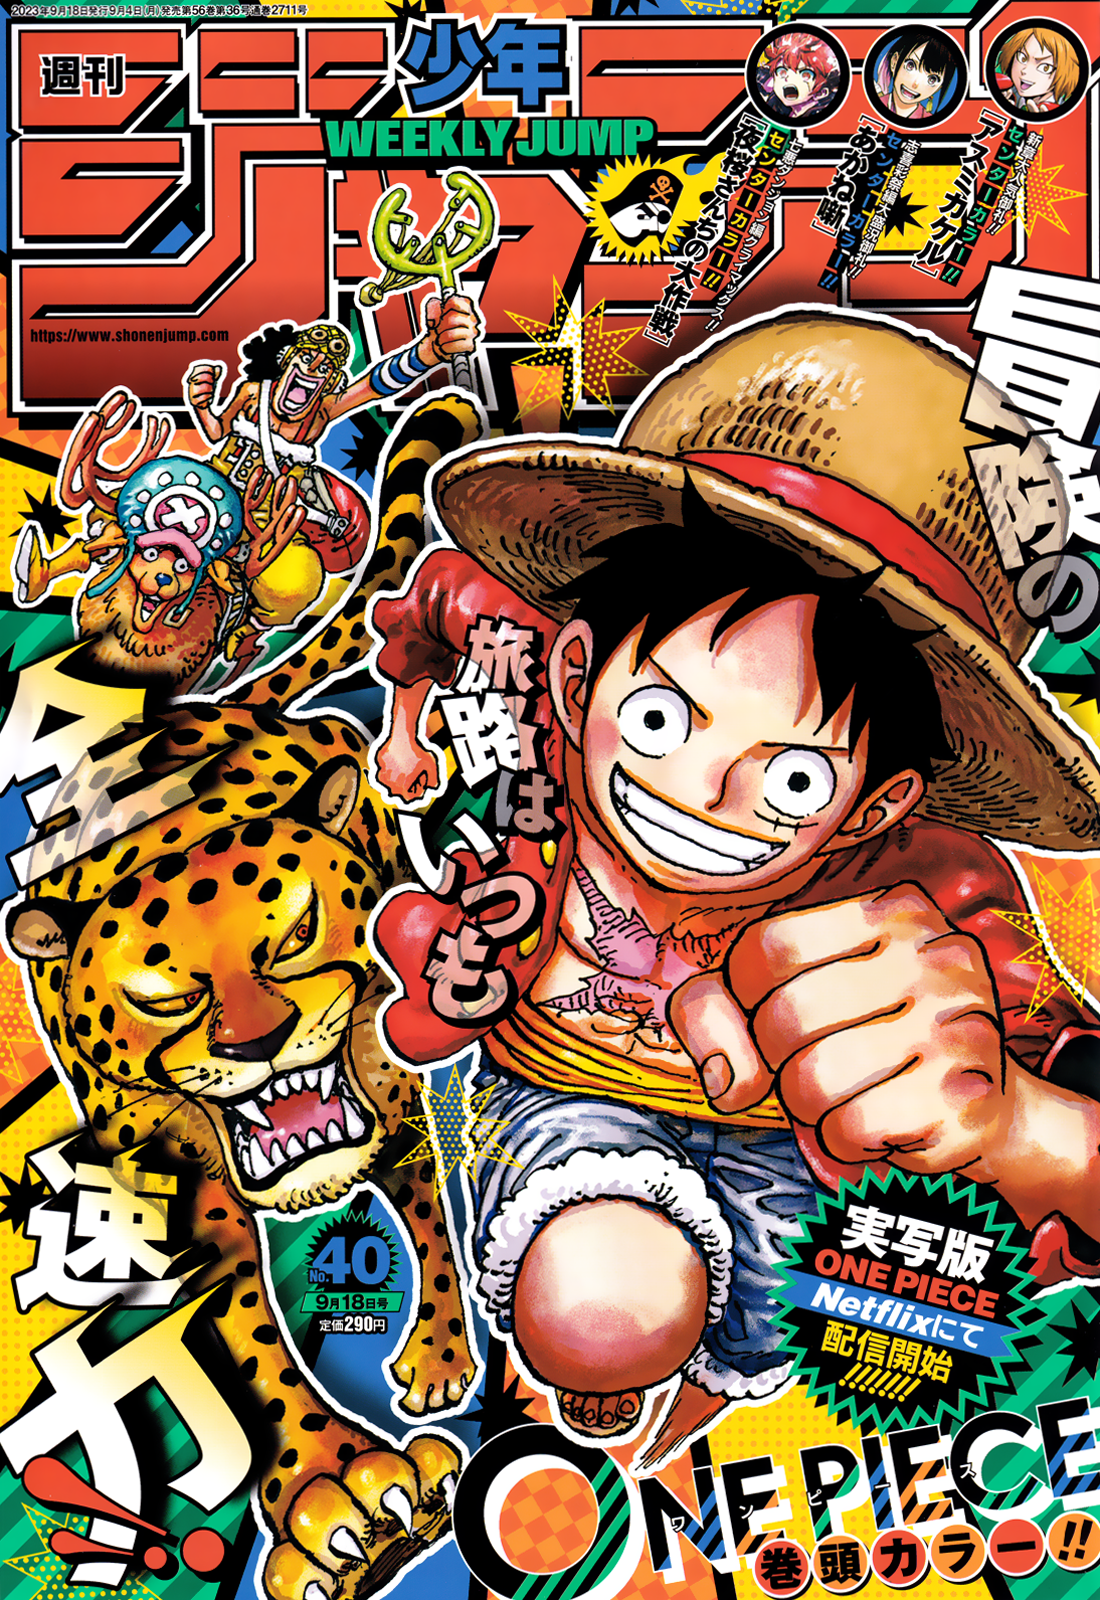 Mangá 1042 de One Piece: leia grátis e com tradução oficial em